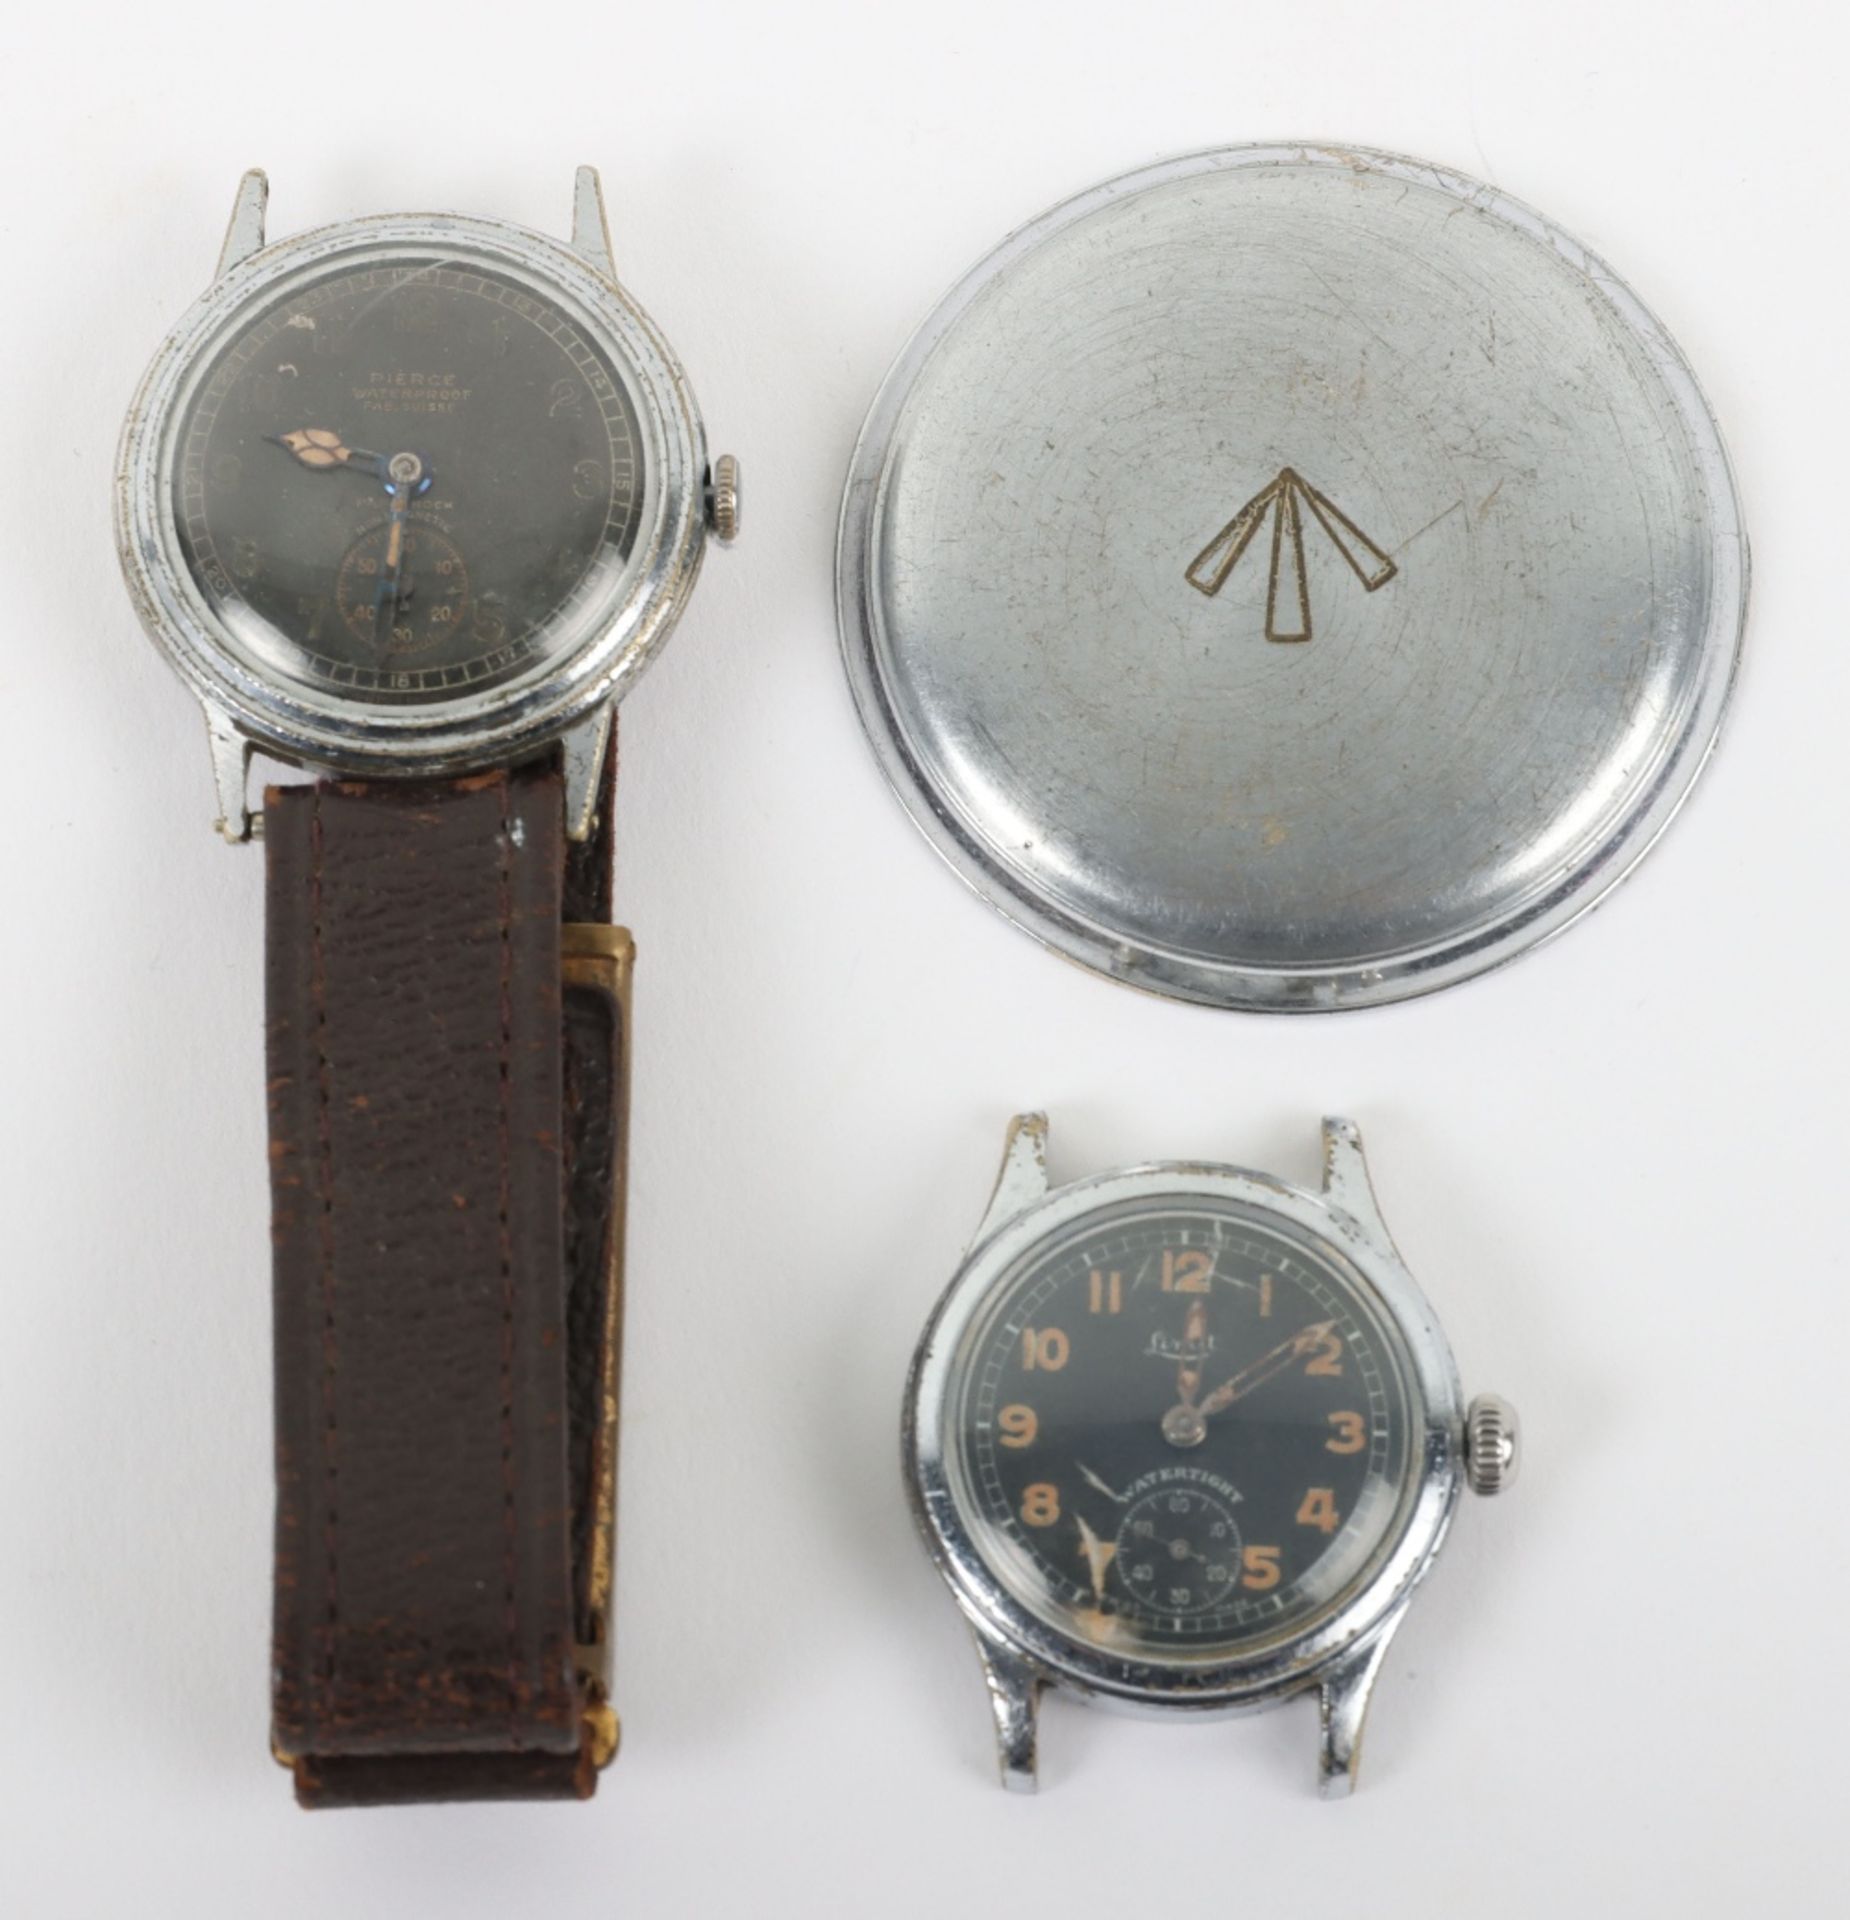 1940’s Period Wristwatch by Pierce